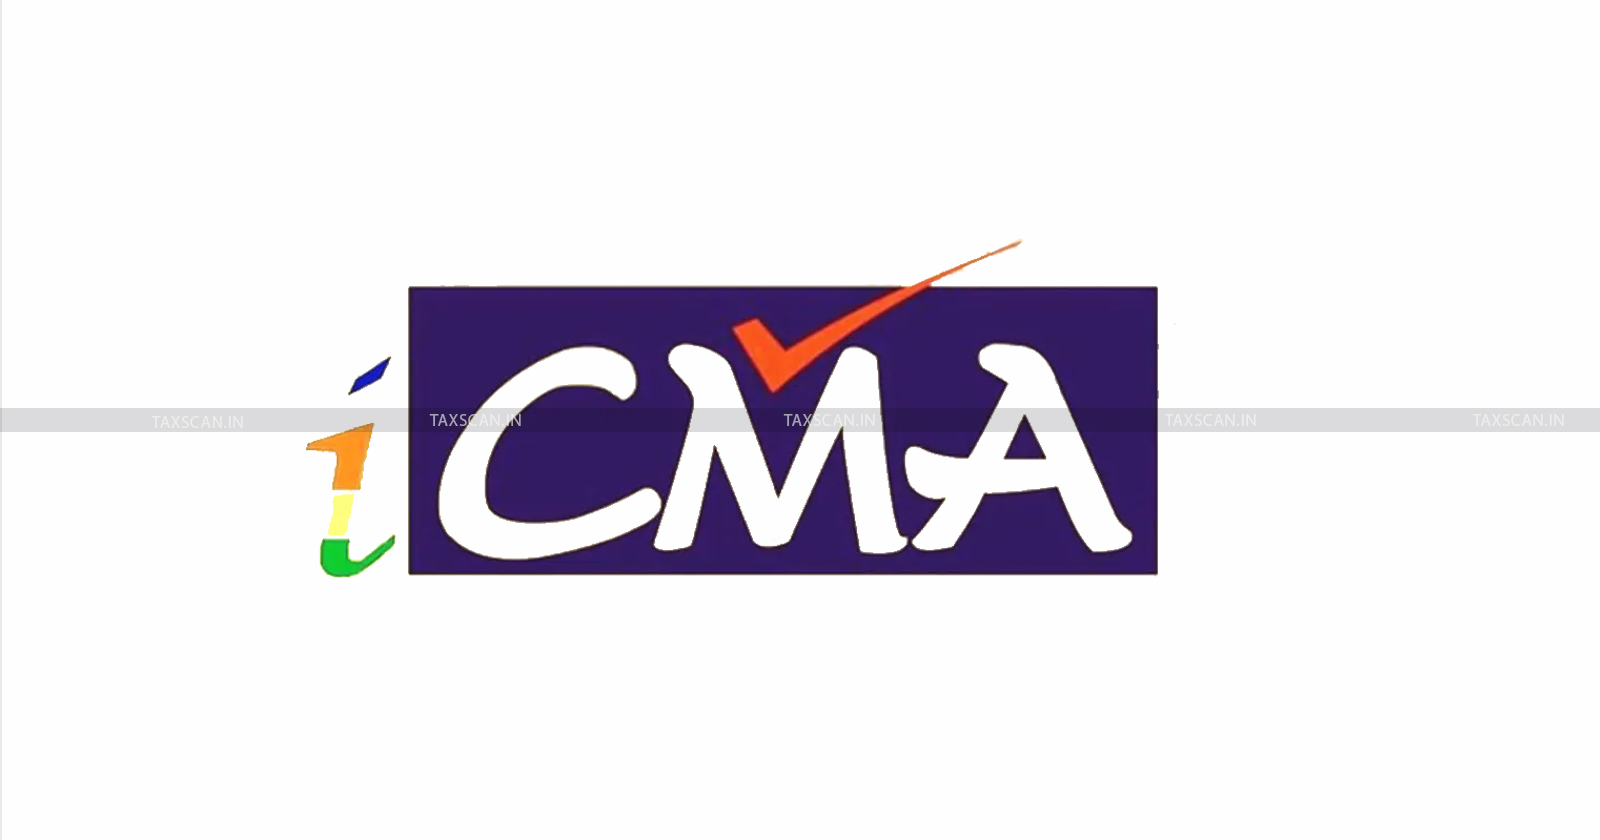 ICMAI - CMA logo - CMA - ICMA - Trademark Registration - Cost Accountant - New icma logo - taxscan